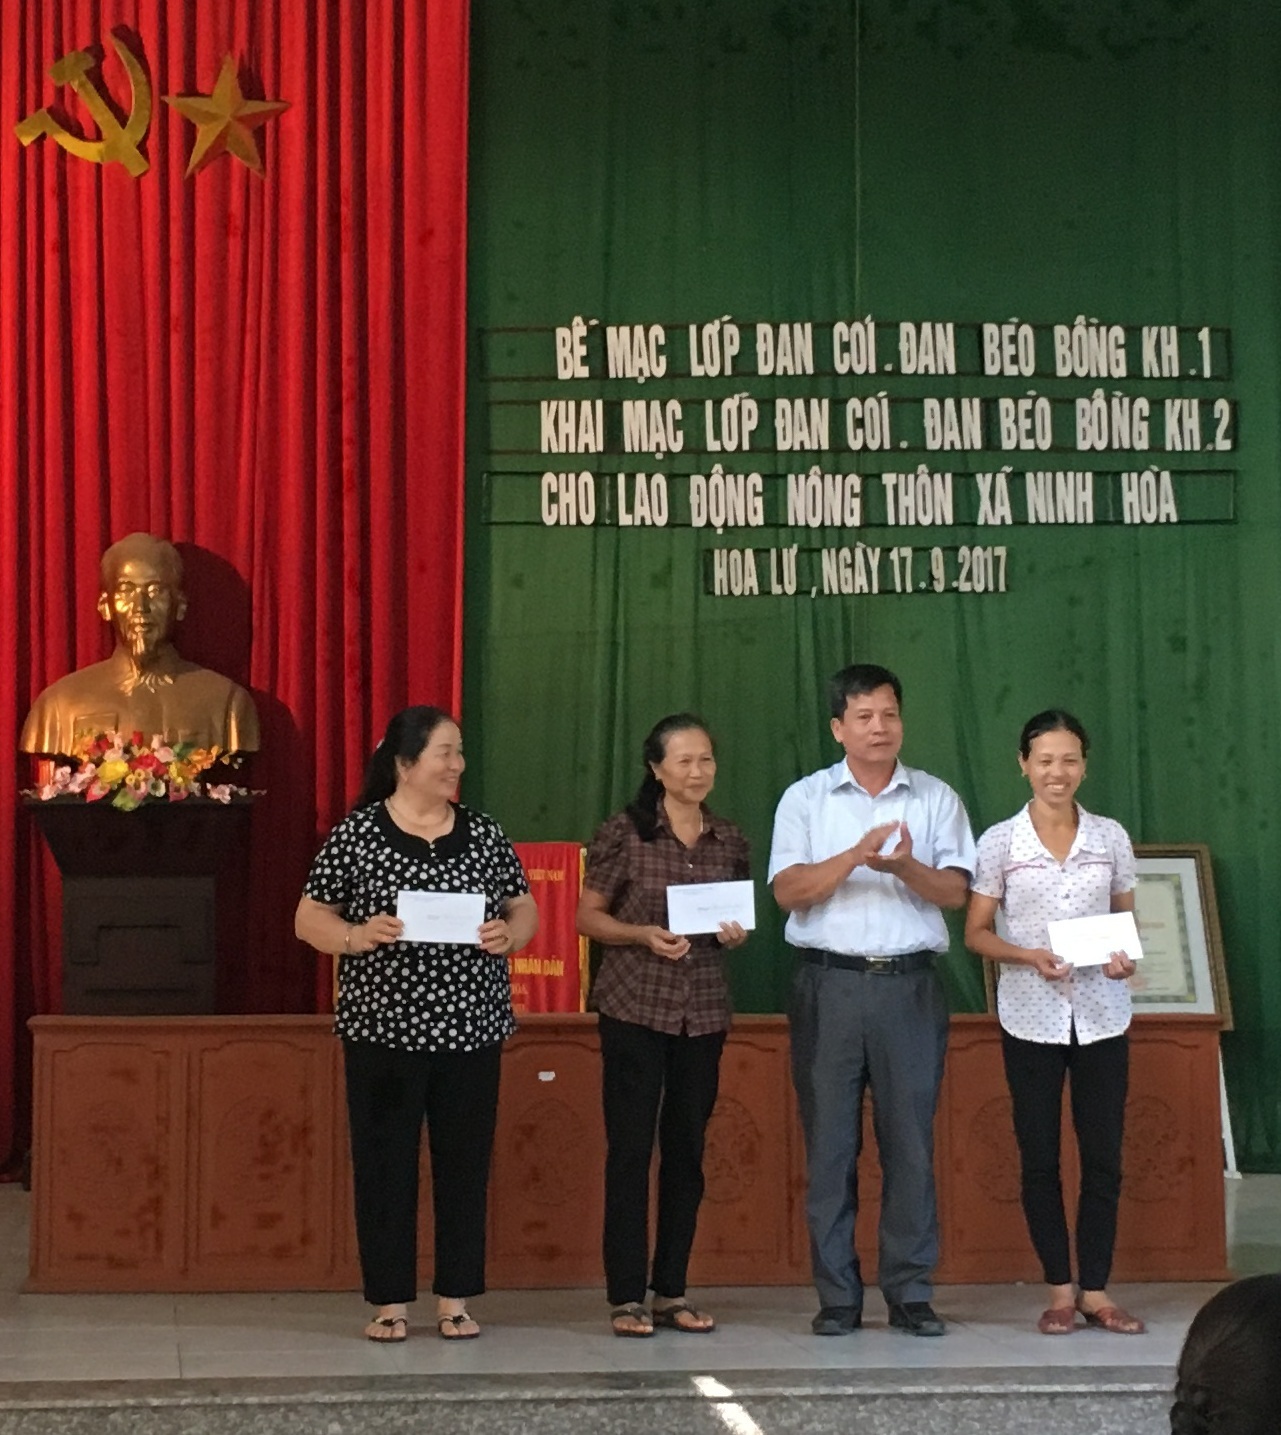 Lãnh đạo xã Ninh Hòa trao thưởng cho các học viên xuất sắc tại buổi bế giảng